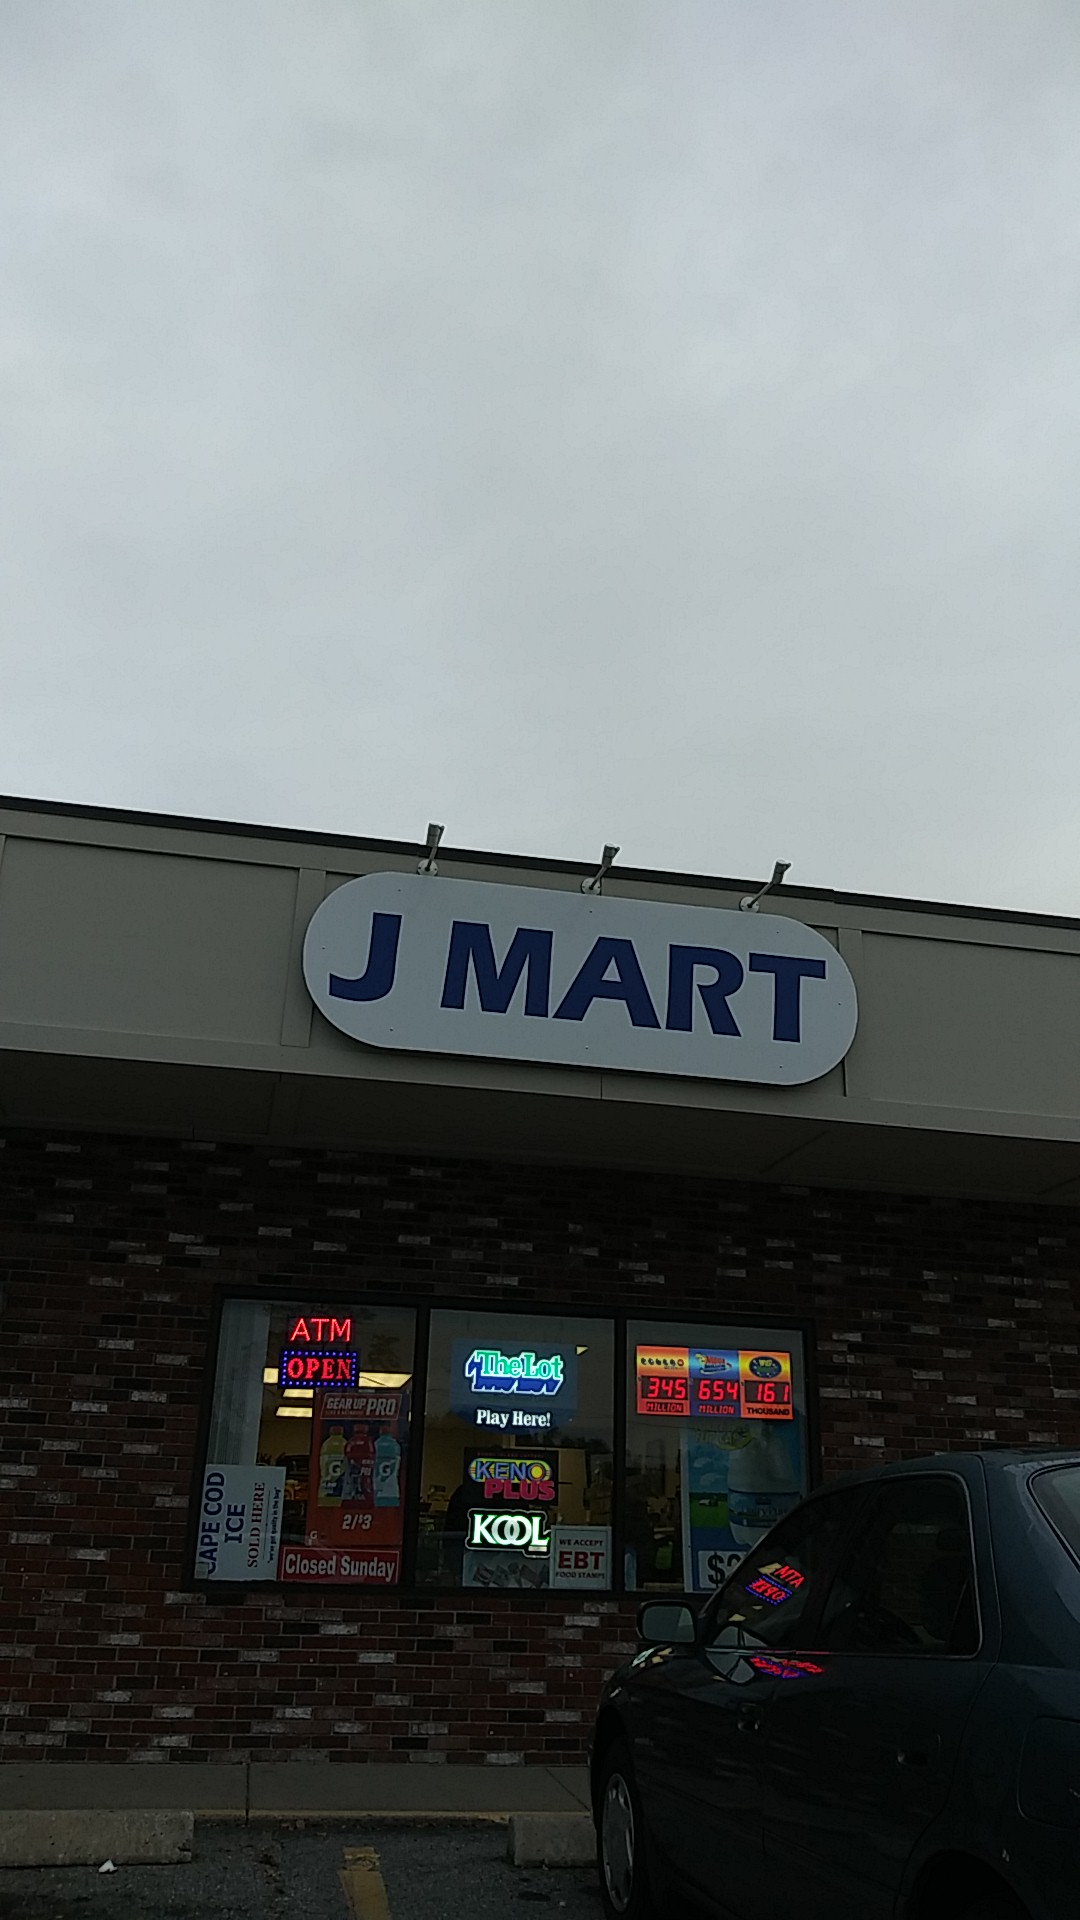 J MART